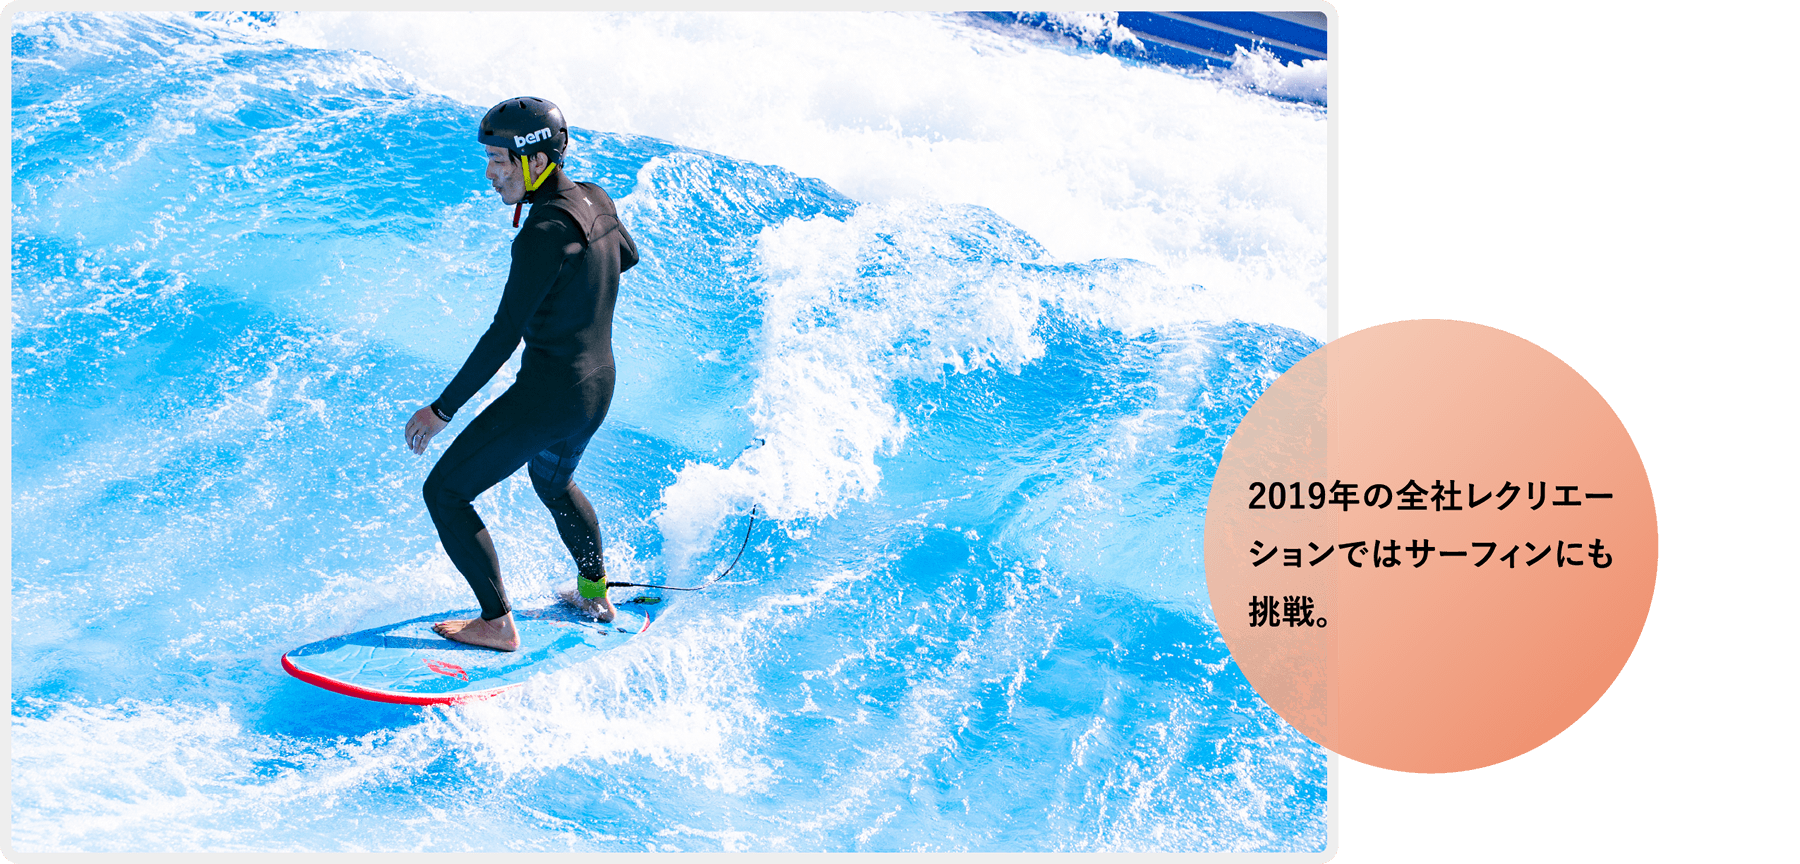 2019年の全社レクリエーションではサーフィンにも挑戦。